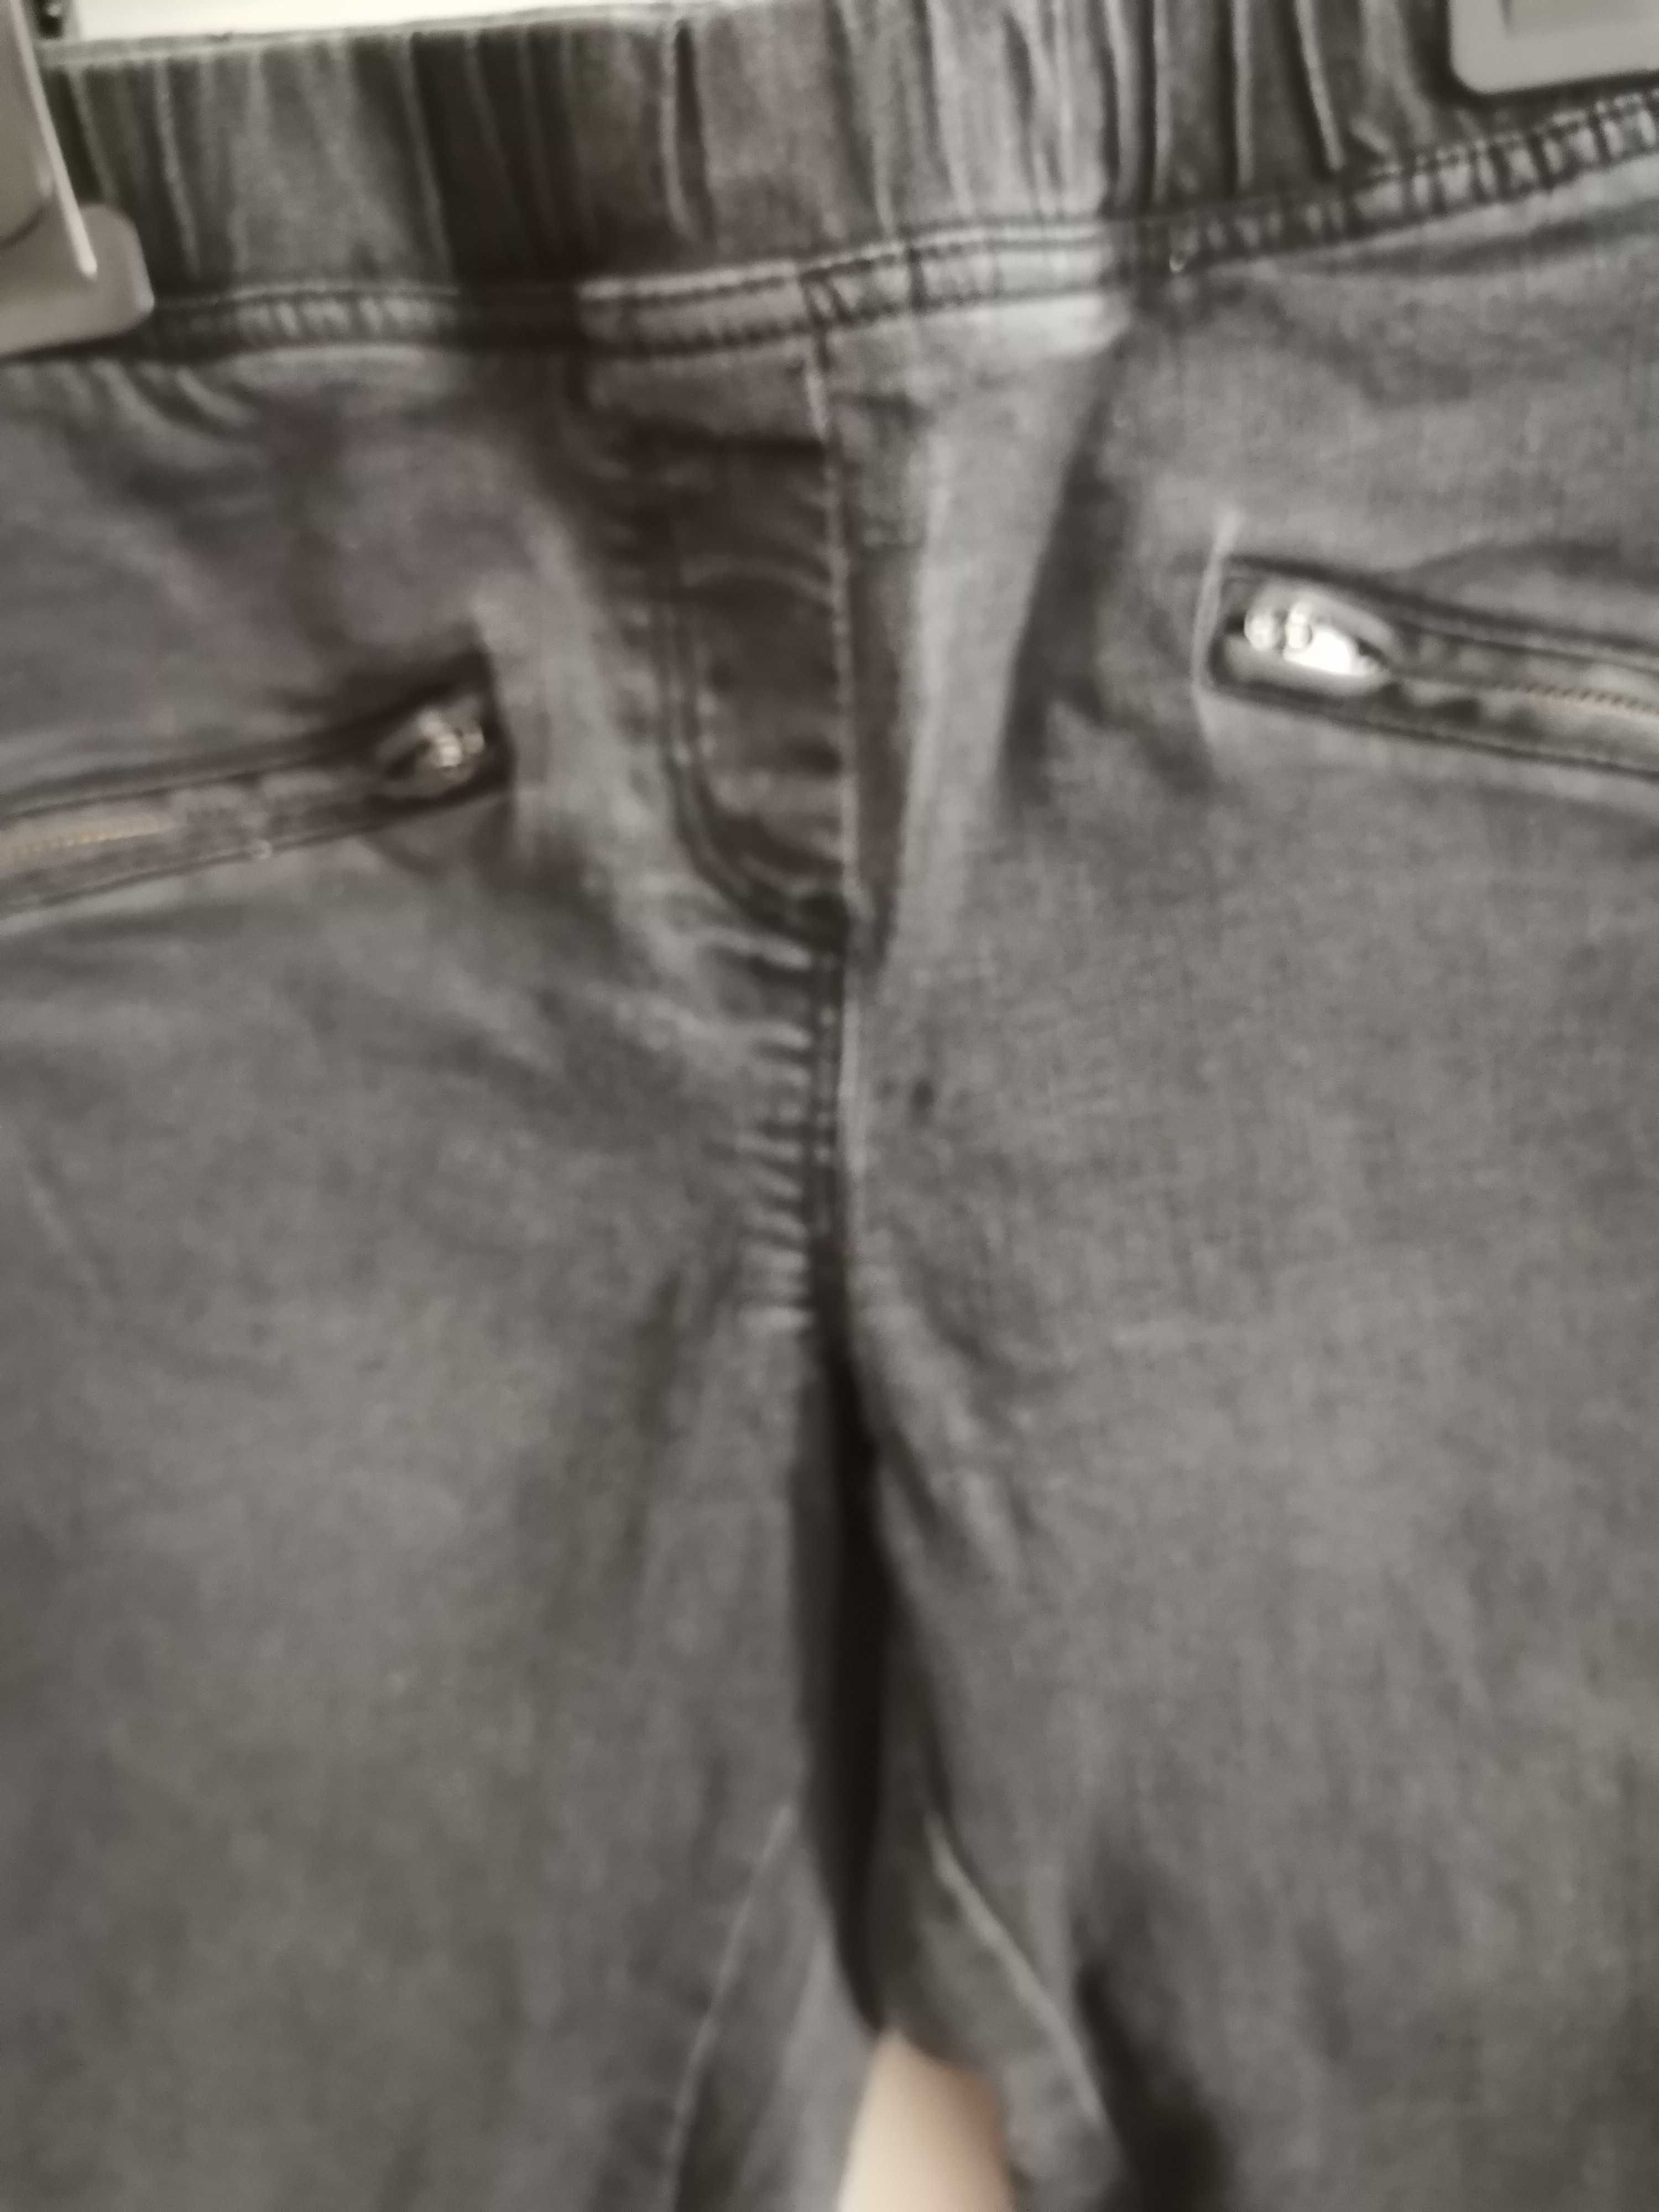 Jeansowe spodnie dla dziewcyznki rozm 140